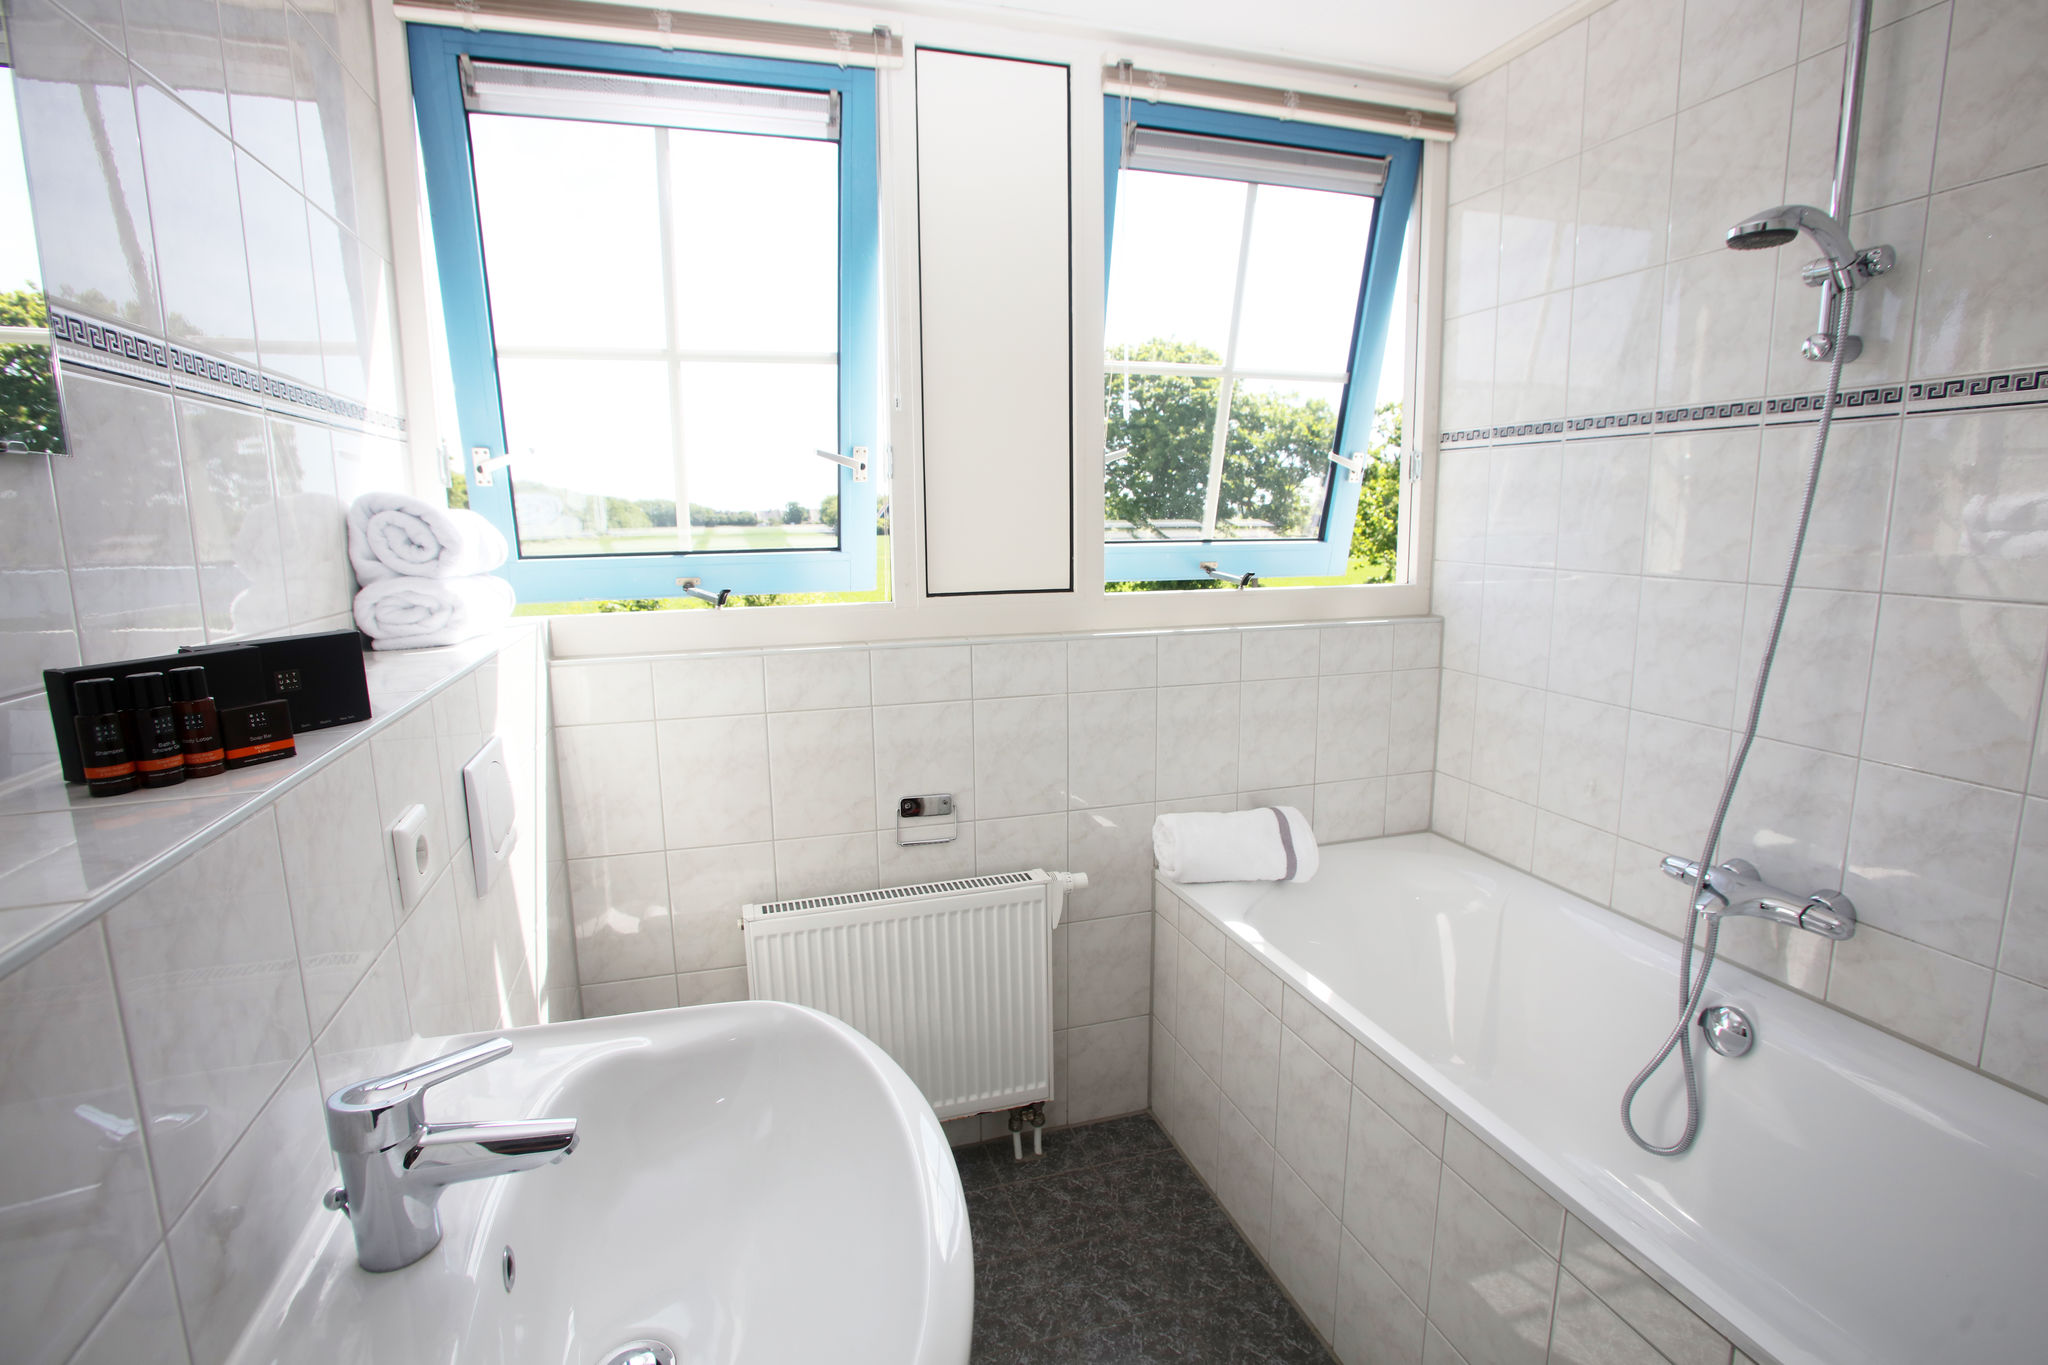 Villa in landhuisstijl met afwasmachine 2km van zee op Texel